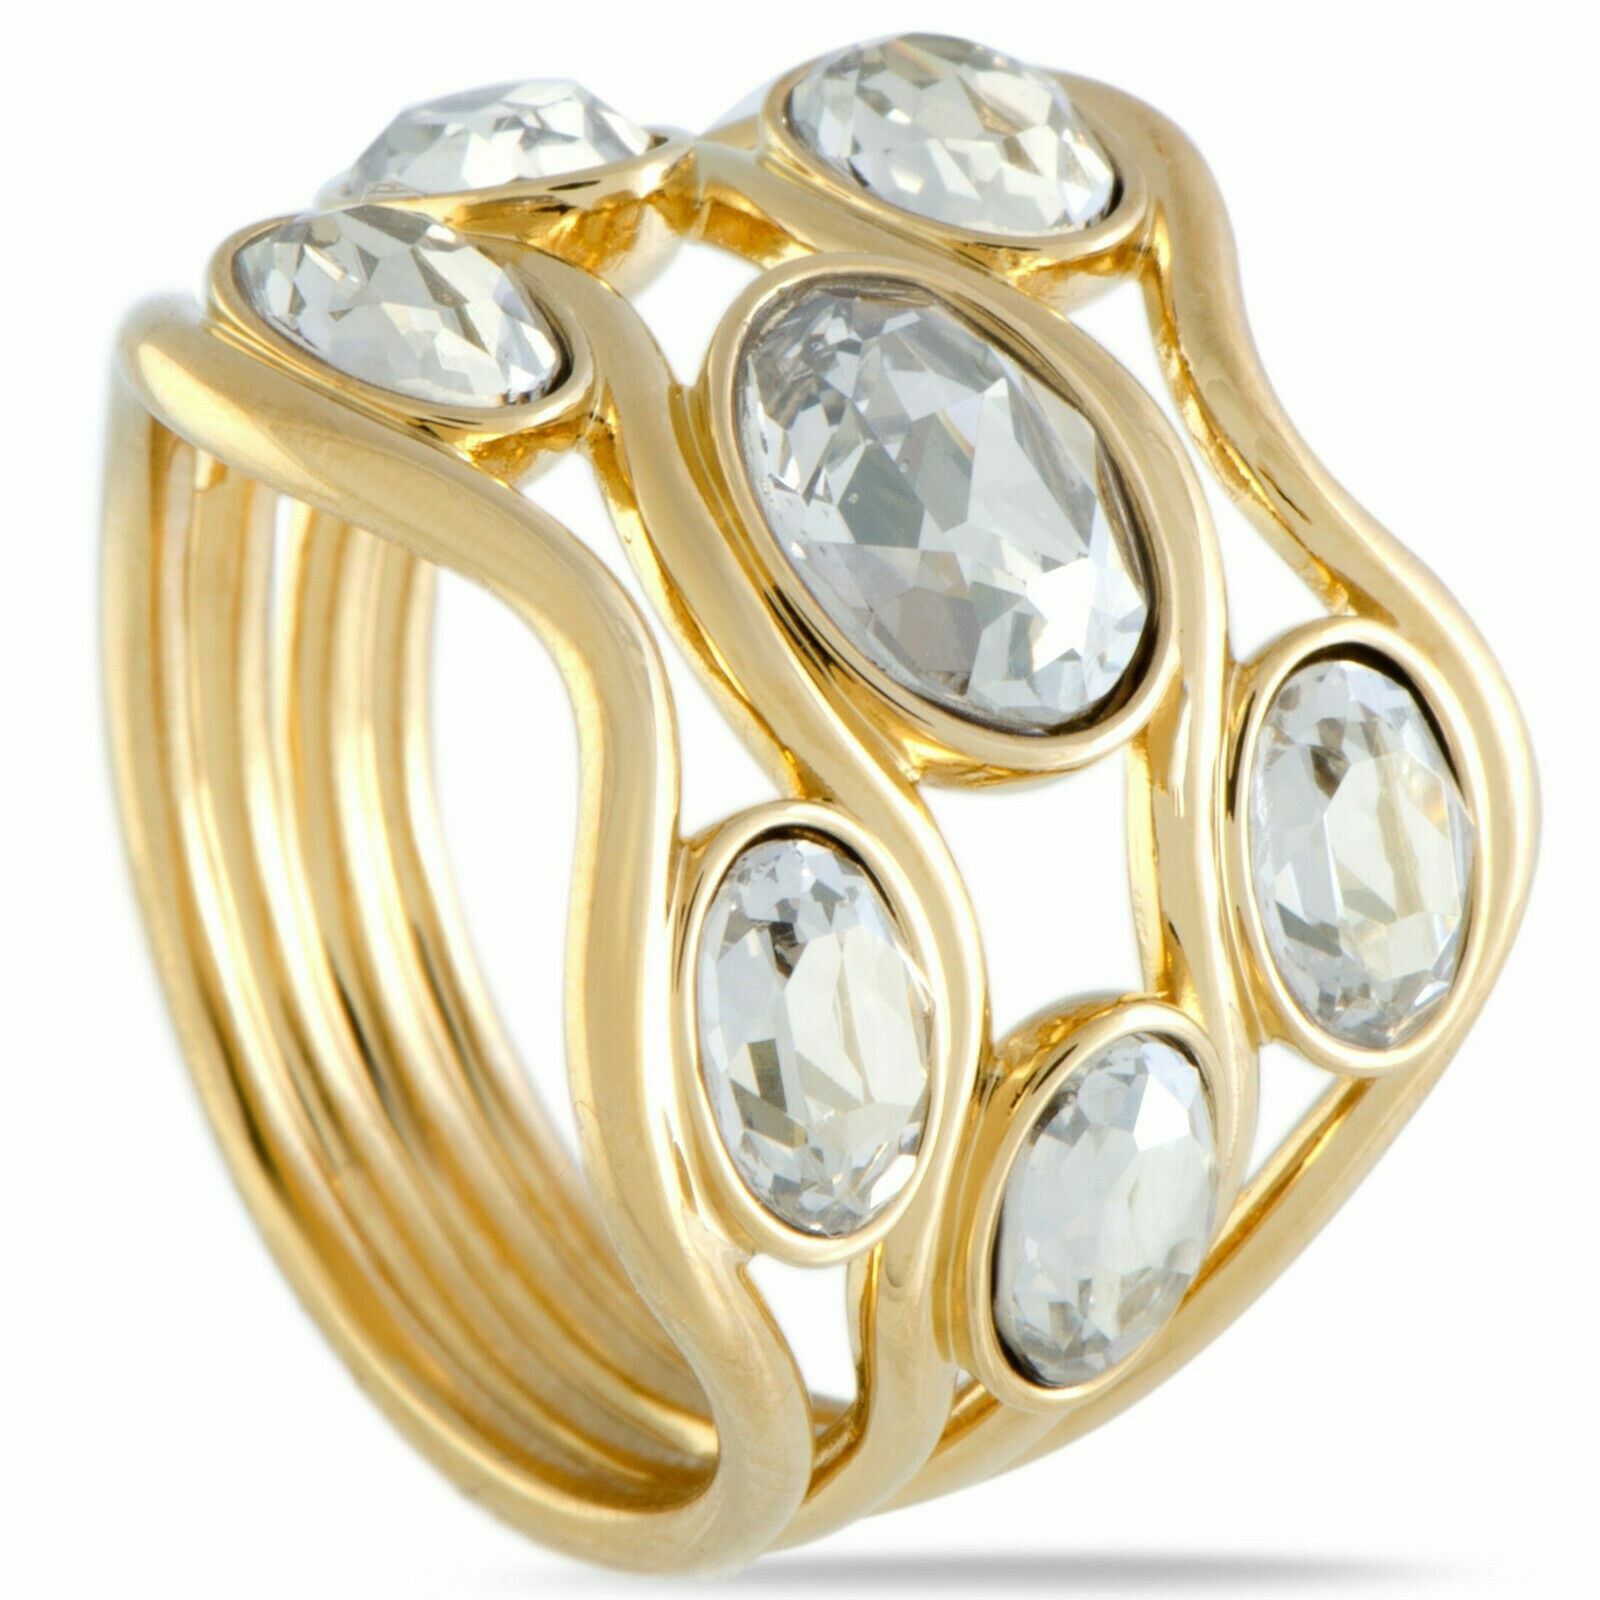 Swarovski  Swarovski Fragment Wide Ring Gold-Plated Size 58/8/L 5257665 NIB $169